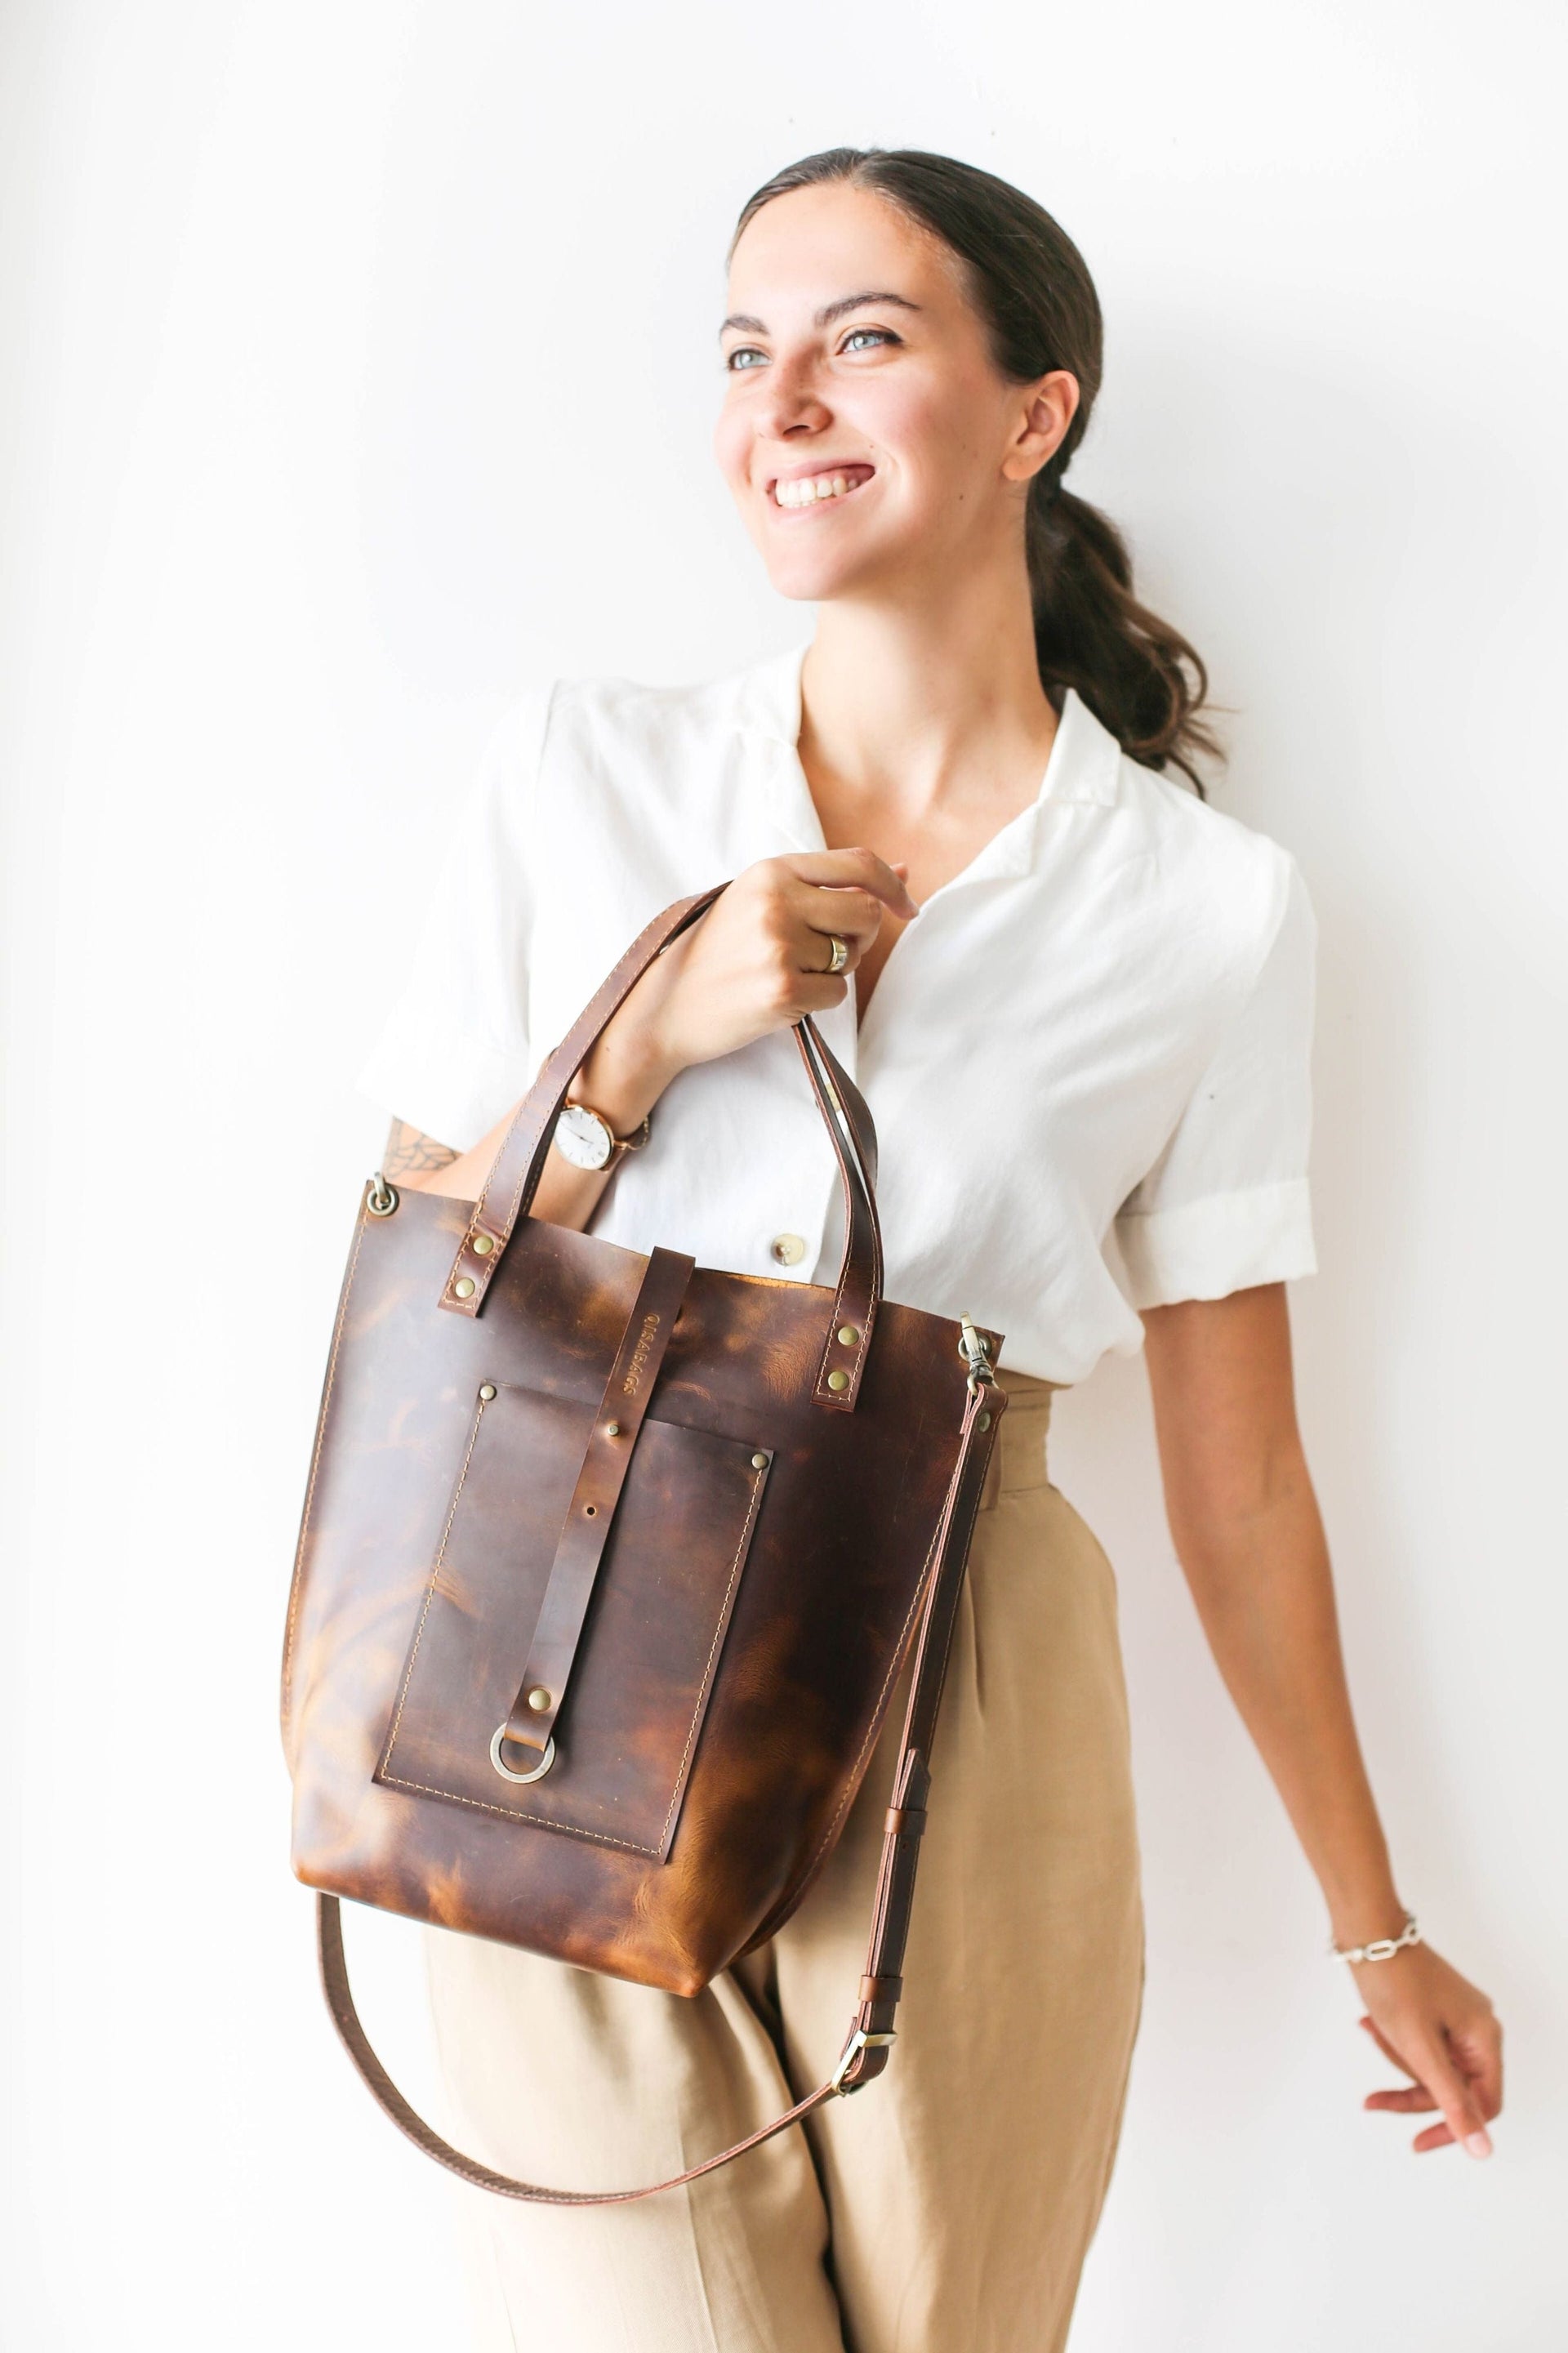 Handmade leather handbag for women